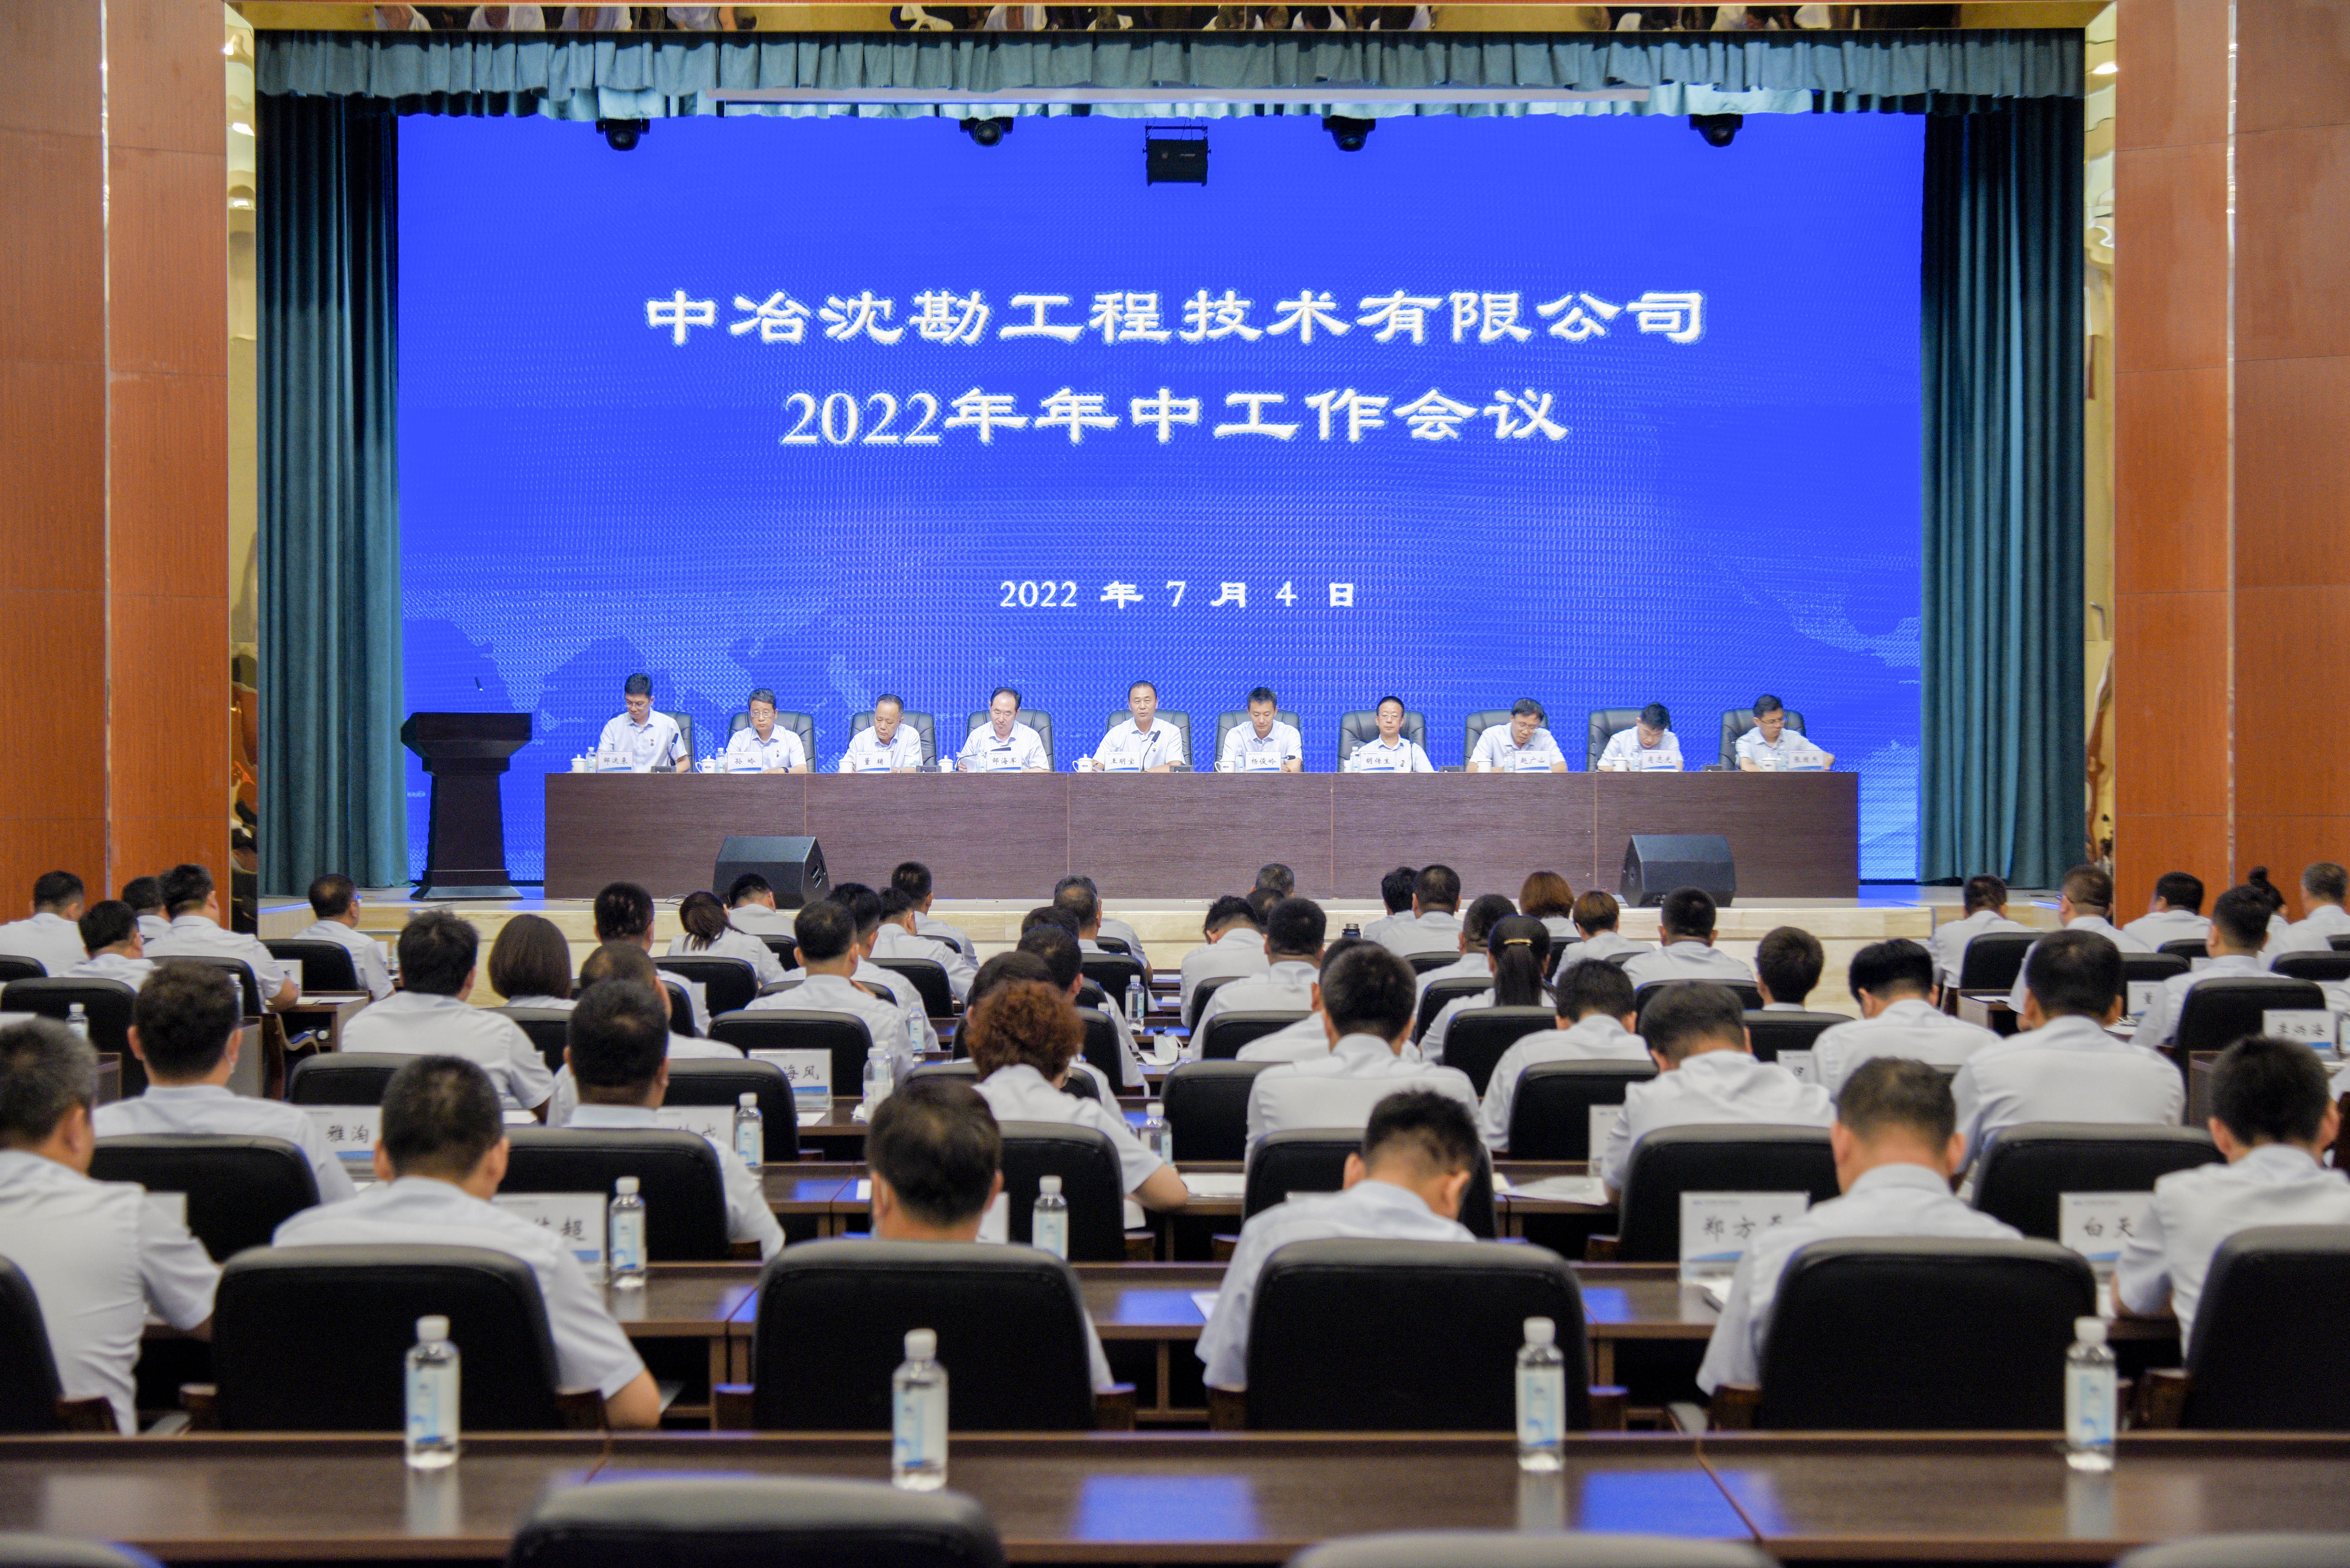 亚愽网-召开2022年年中工作会议